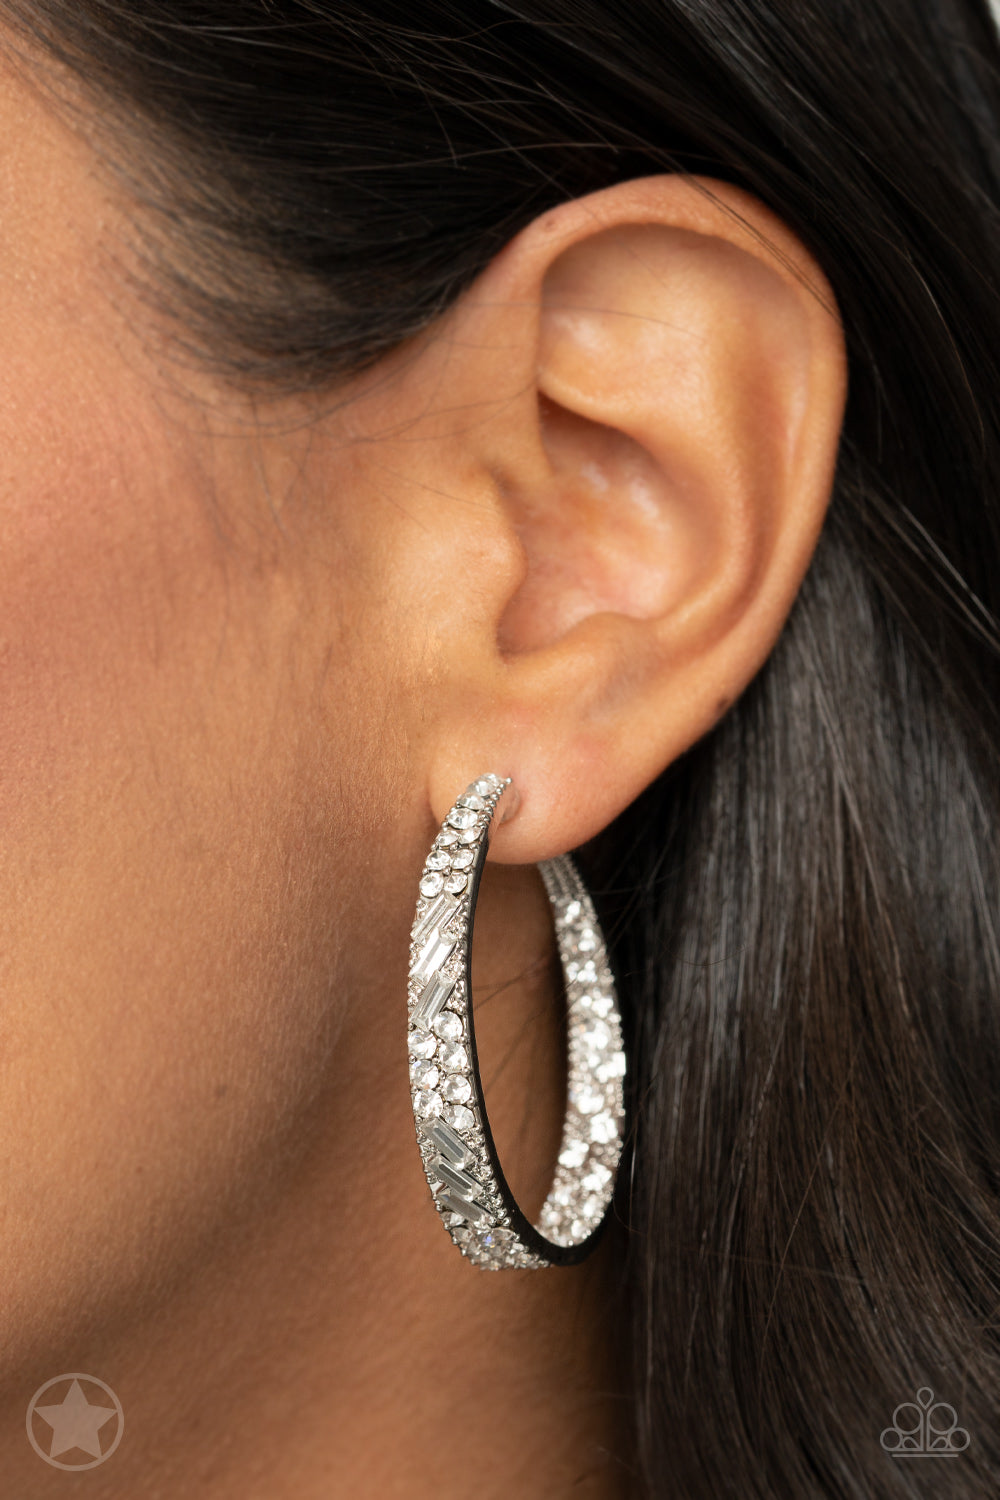 GLITZY By Association Earrings - White